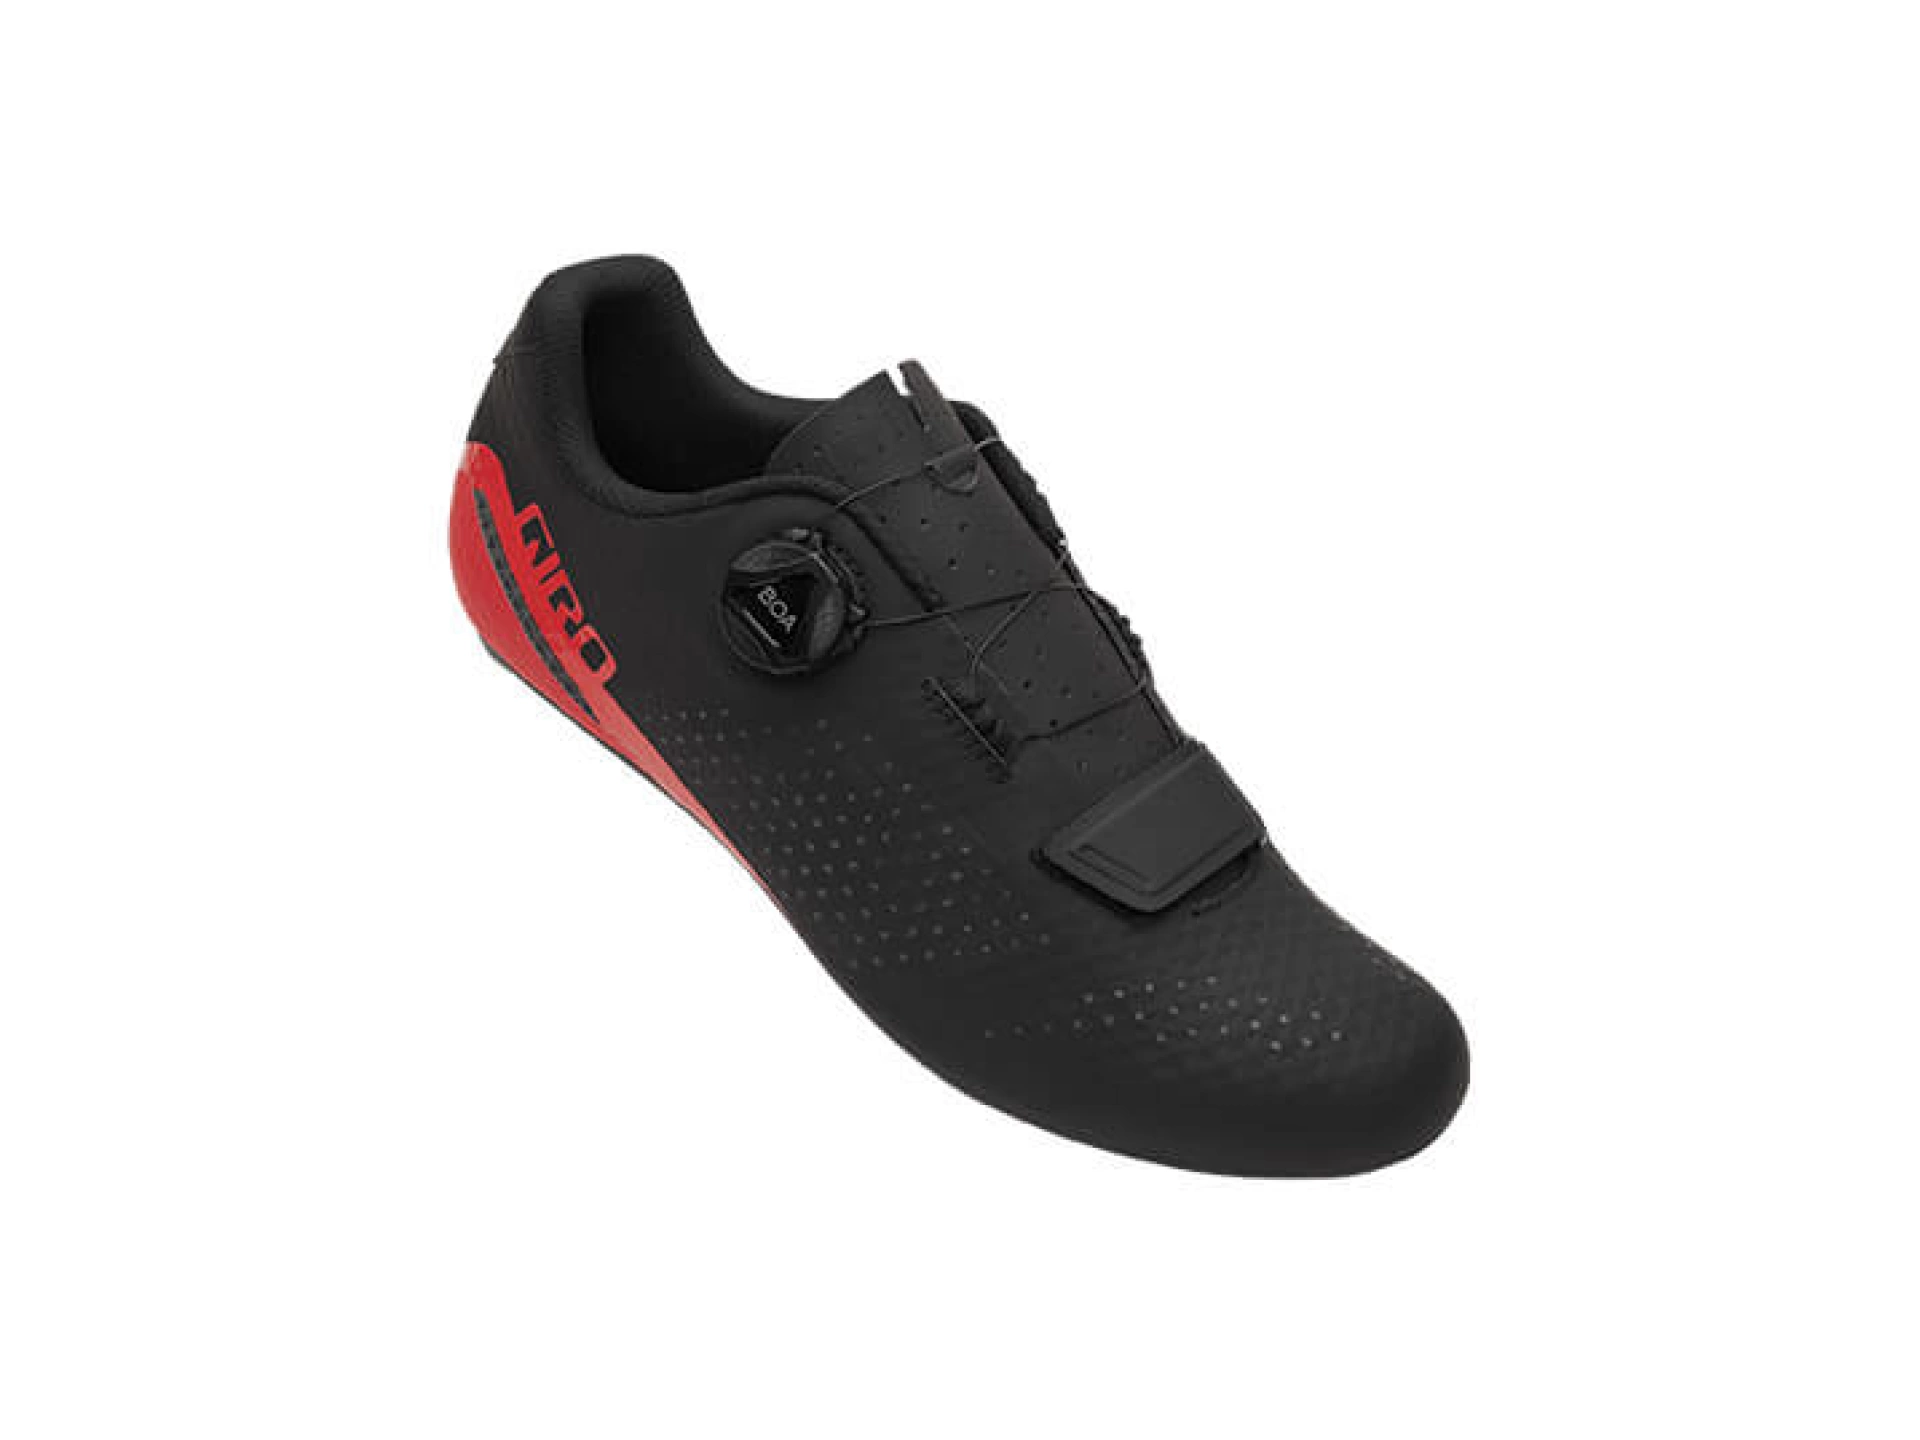 Giro Gf Cadet Spd Ayakkabı Siyah-Kırmızı 42 Numara